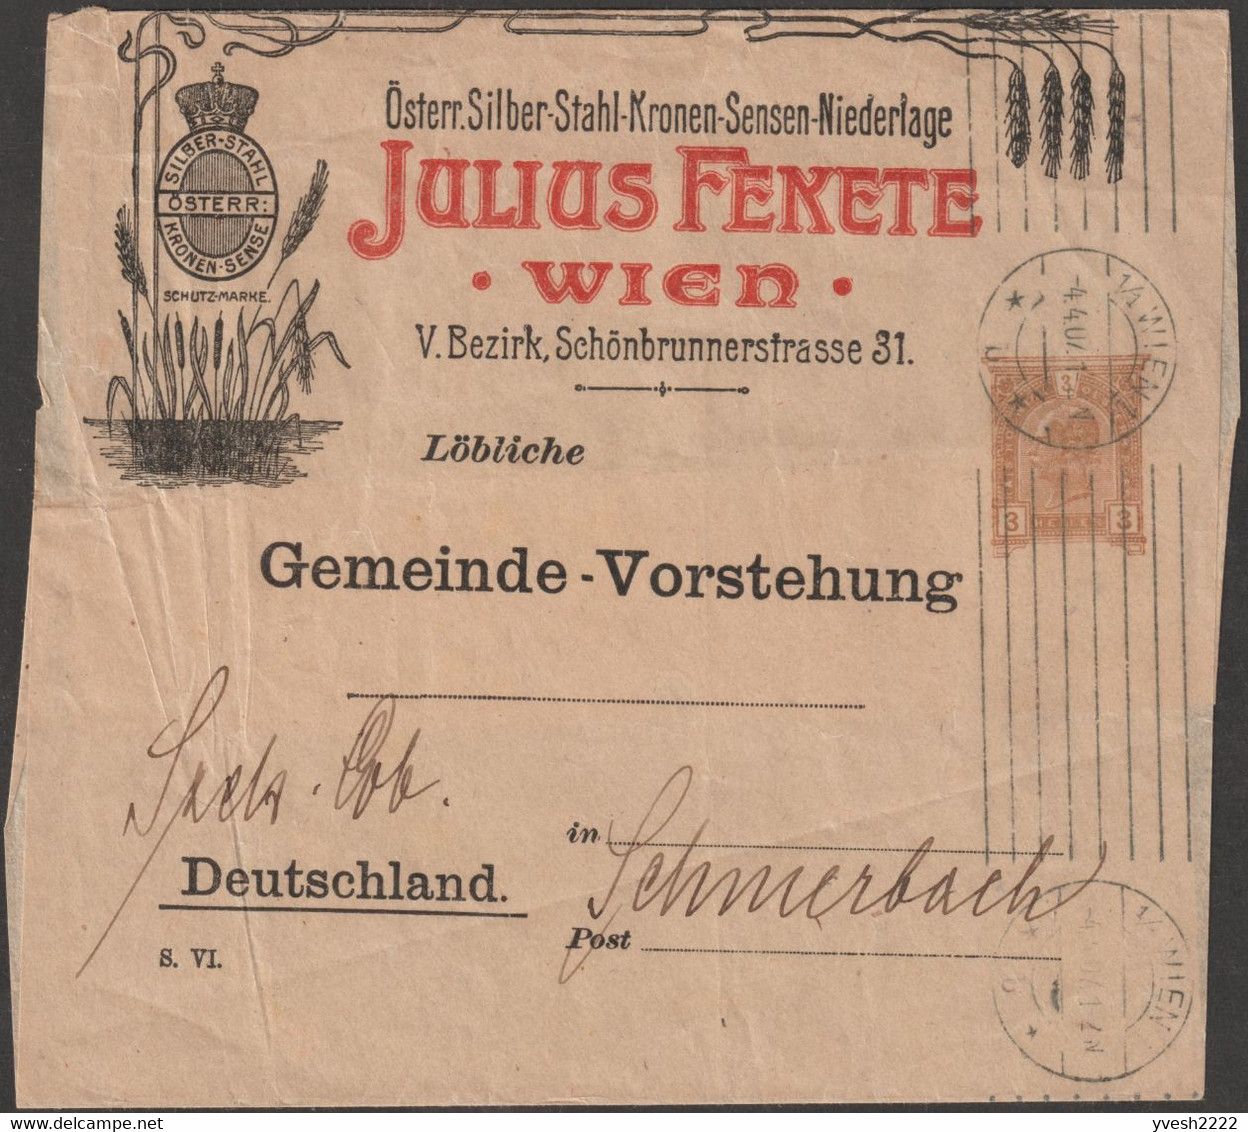 Autriche 1907. Entier Postal Publicitaire. Bande-journal.  Argent Autrichien, Acier, Faucille, épis De Blé - Agriculture